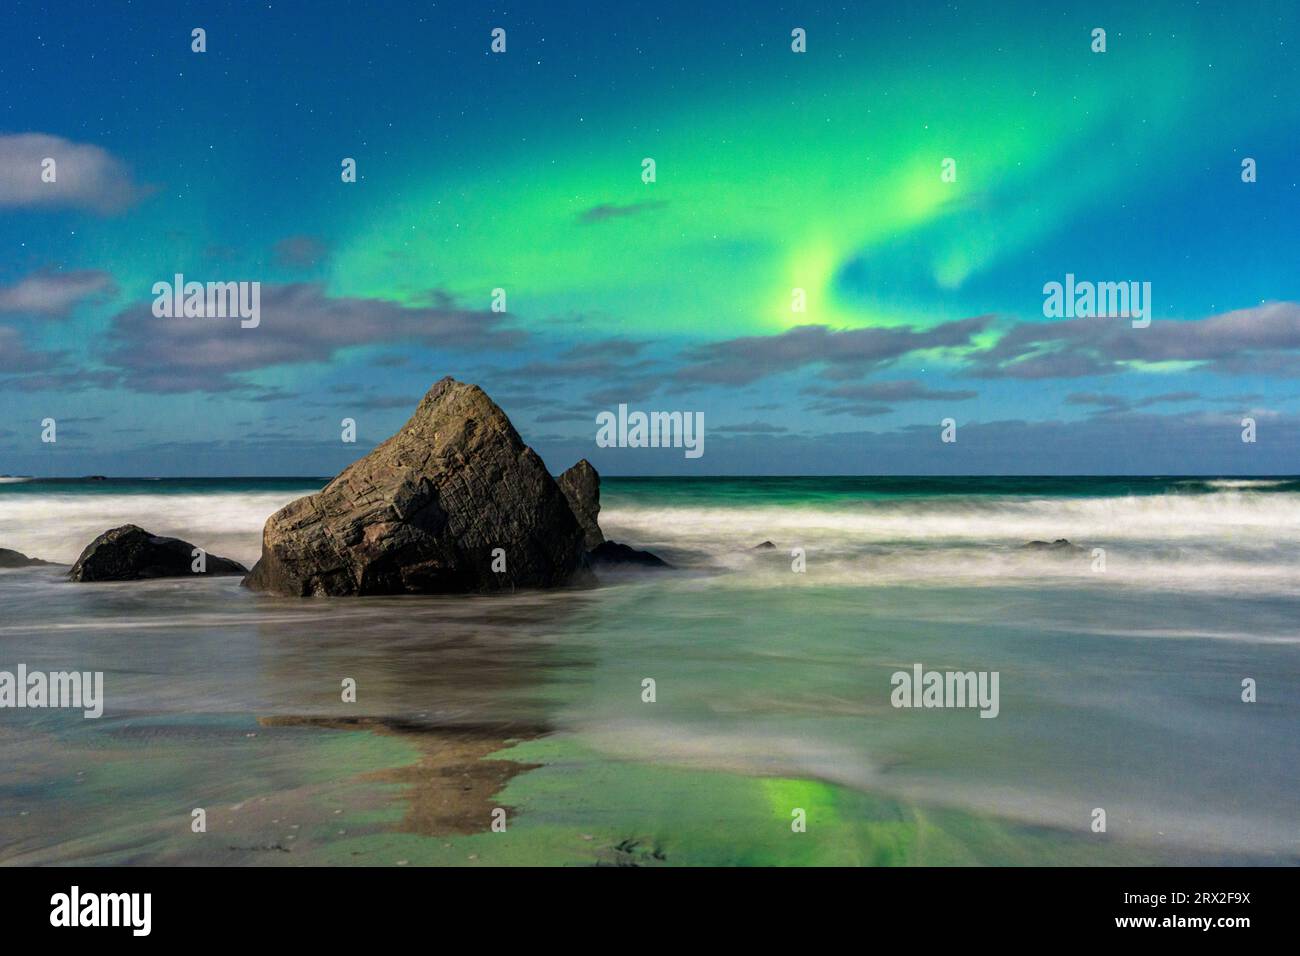 Vagues s'écrasant sur des rochers sous un ciel lumineux avec te Aurora Borealis (aurores boréales), plage de Skagsanden, Ramberg, îles Lofoten, Nordland, Norvège Banque D'Images